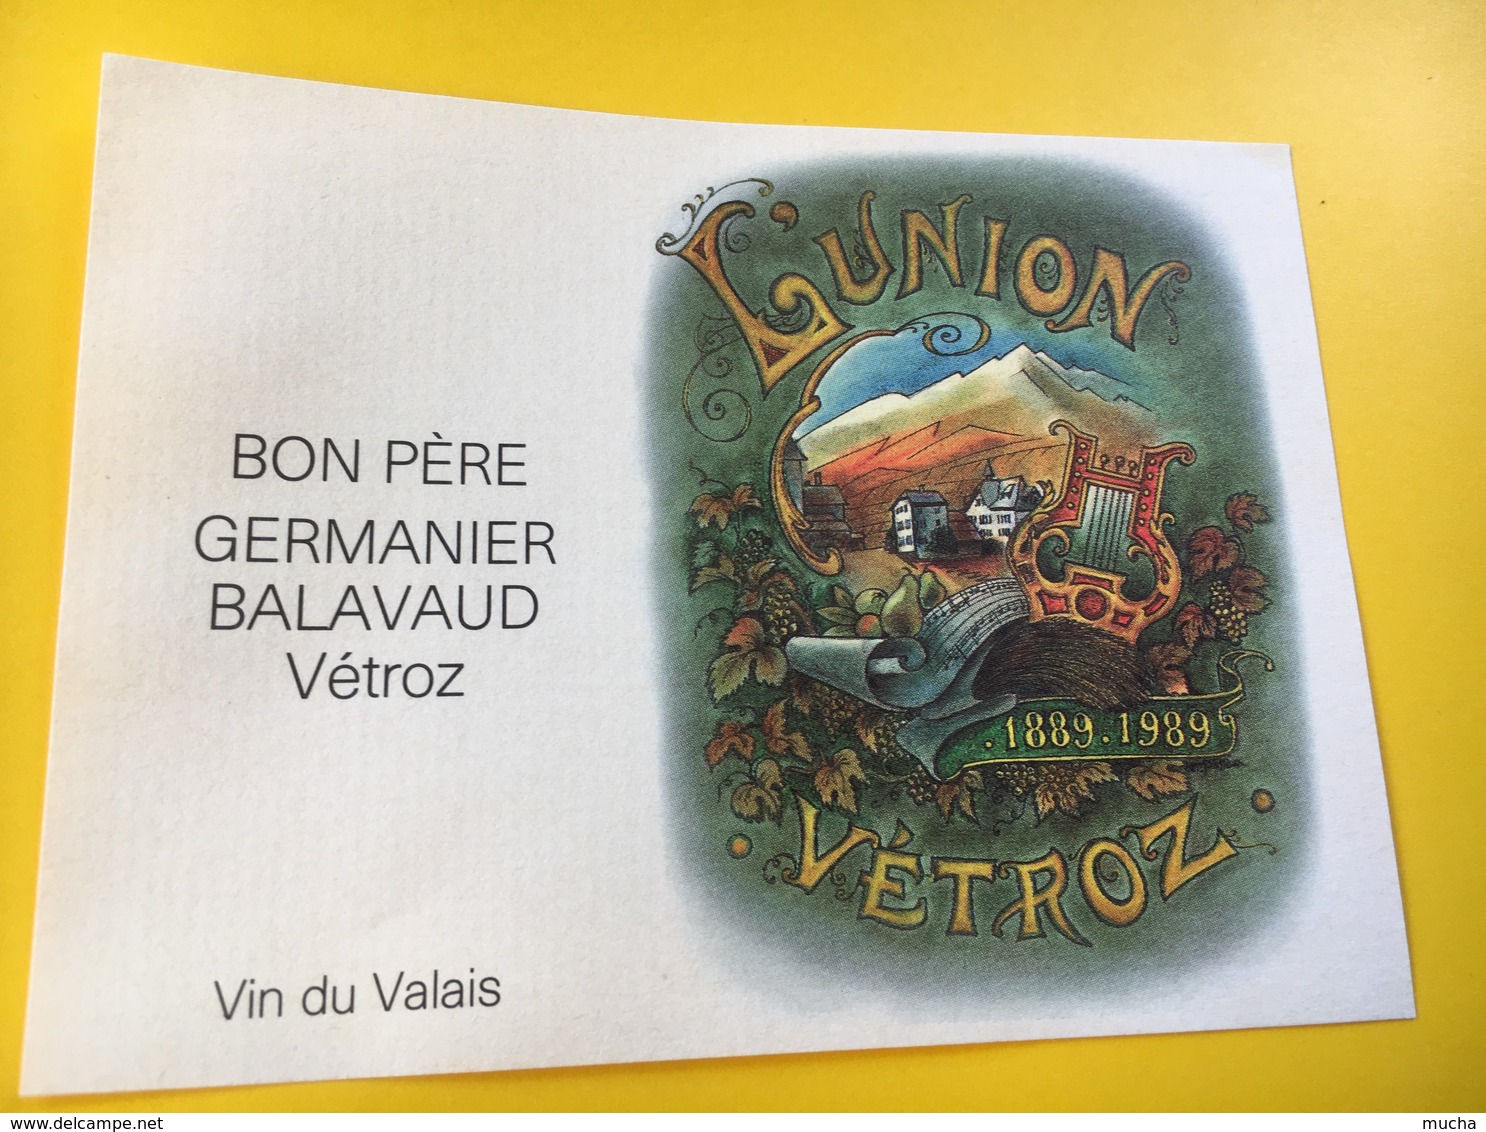 8788 - L'Union Vétroz 1889-1989 Suisse Bon Père Germanier Balavaud Vétroz - Musique